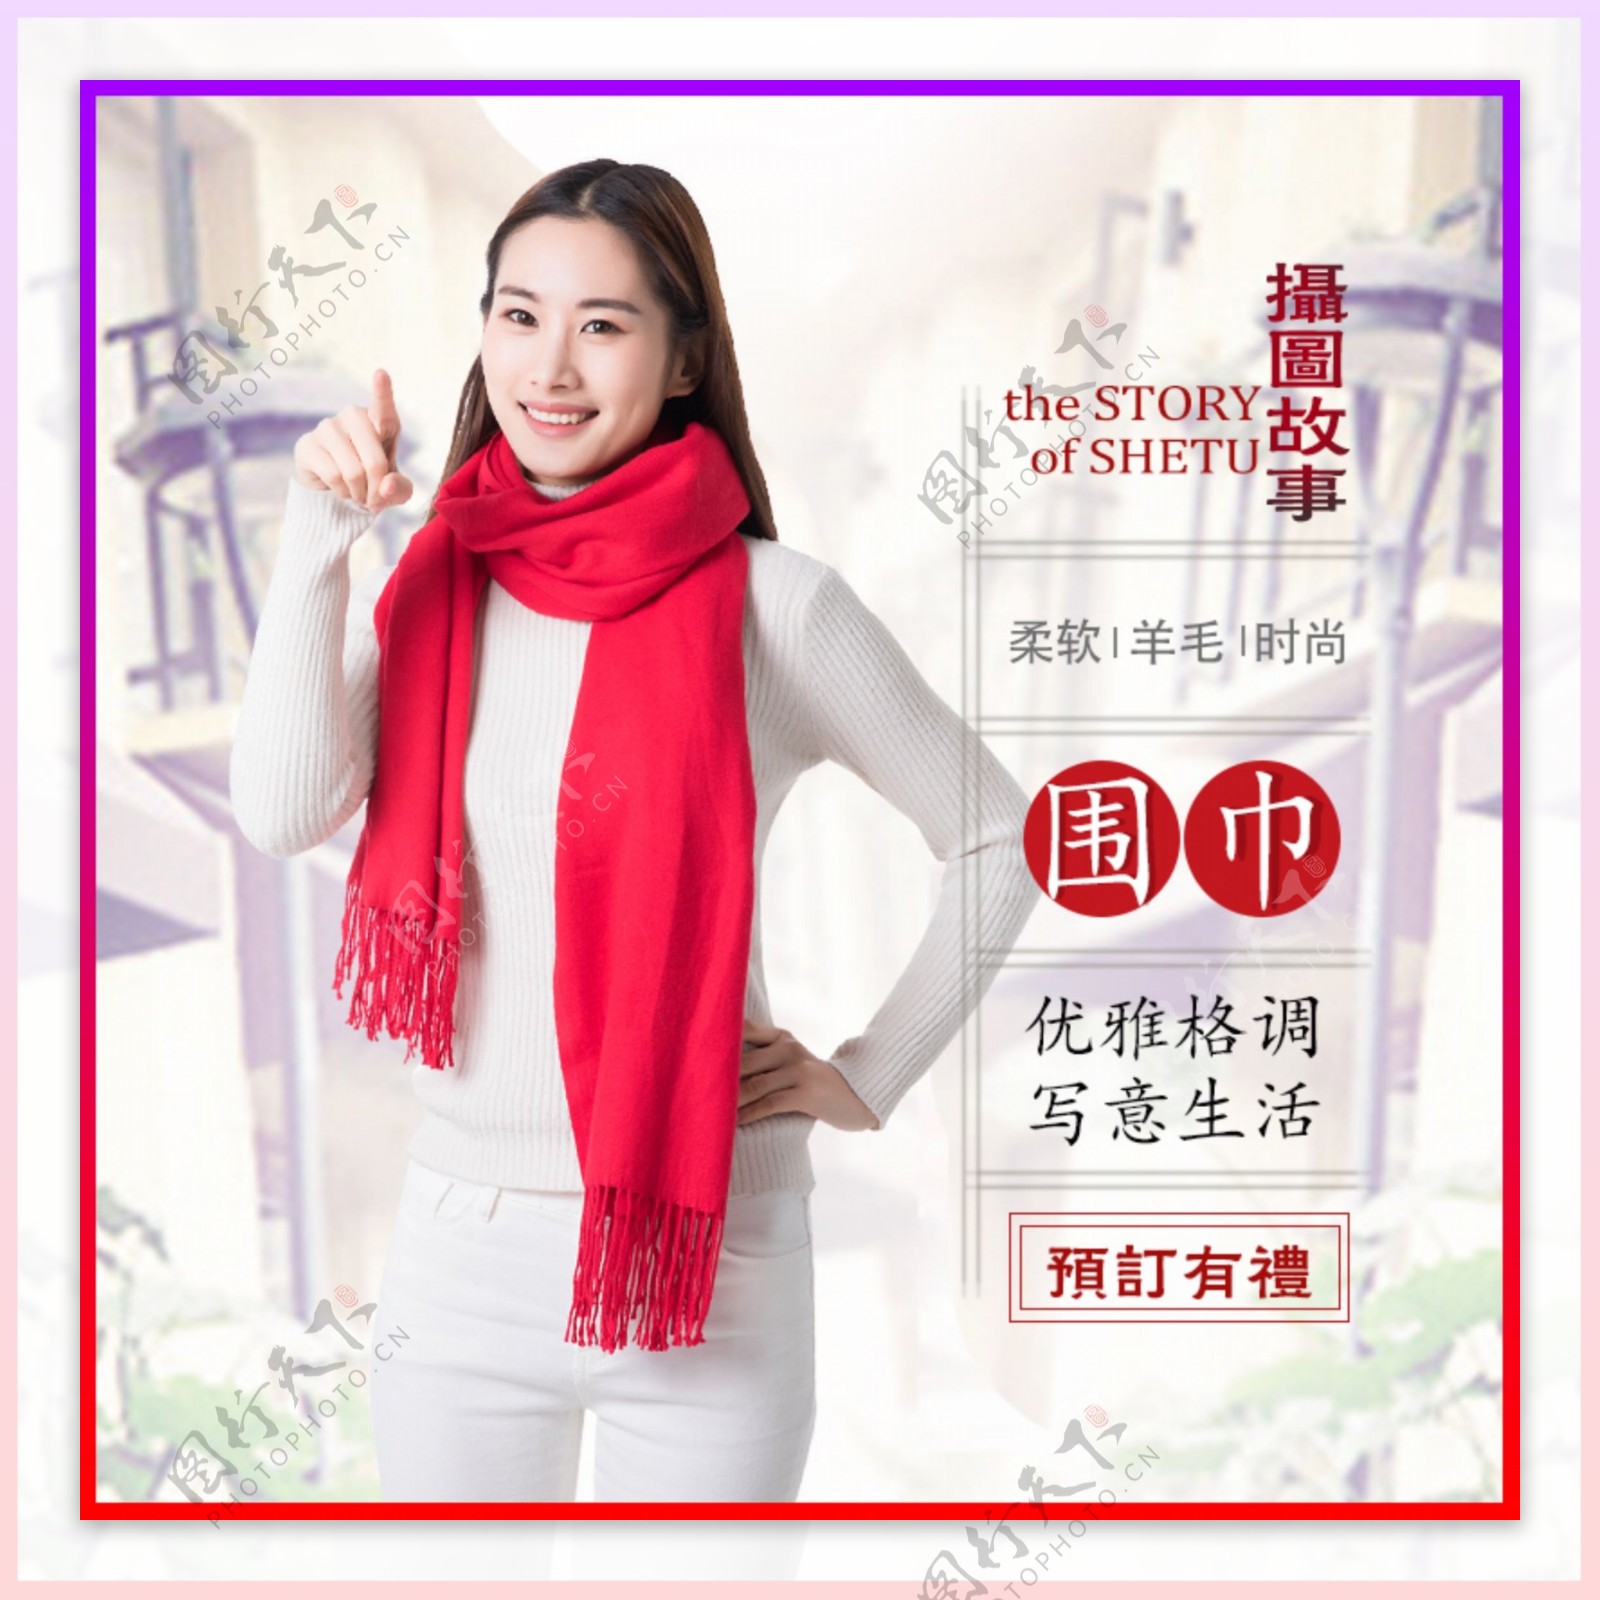 中国红围巾促销淘宝主图